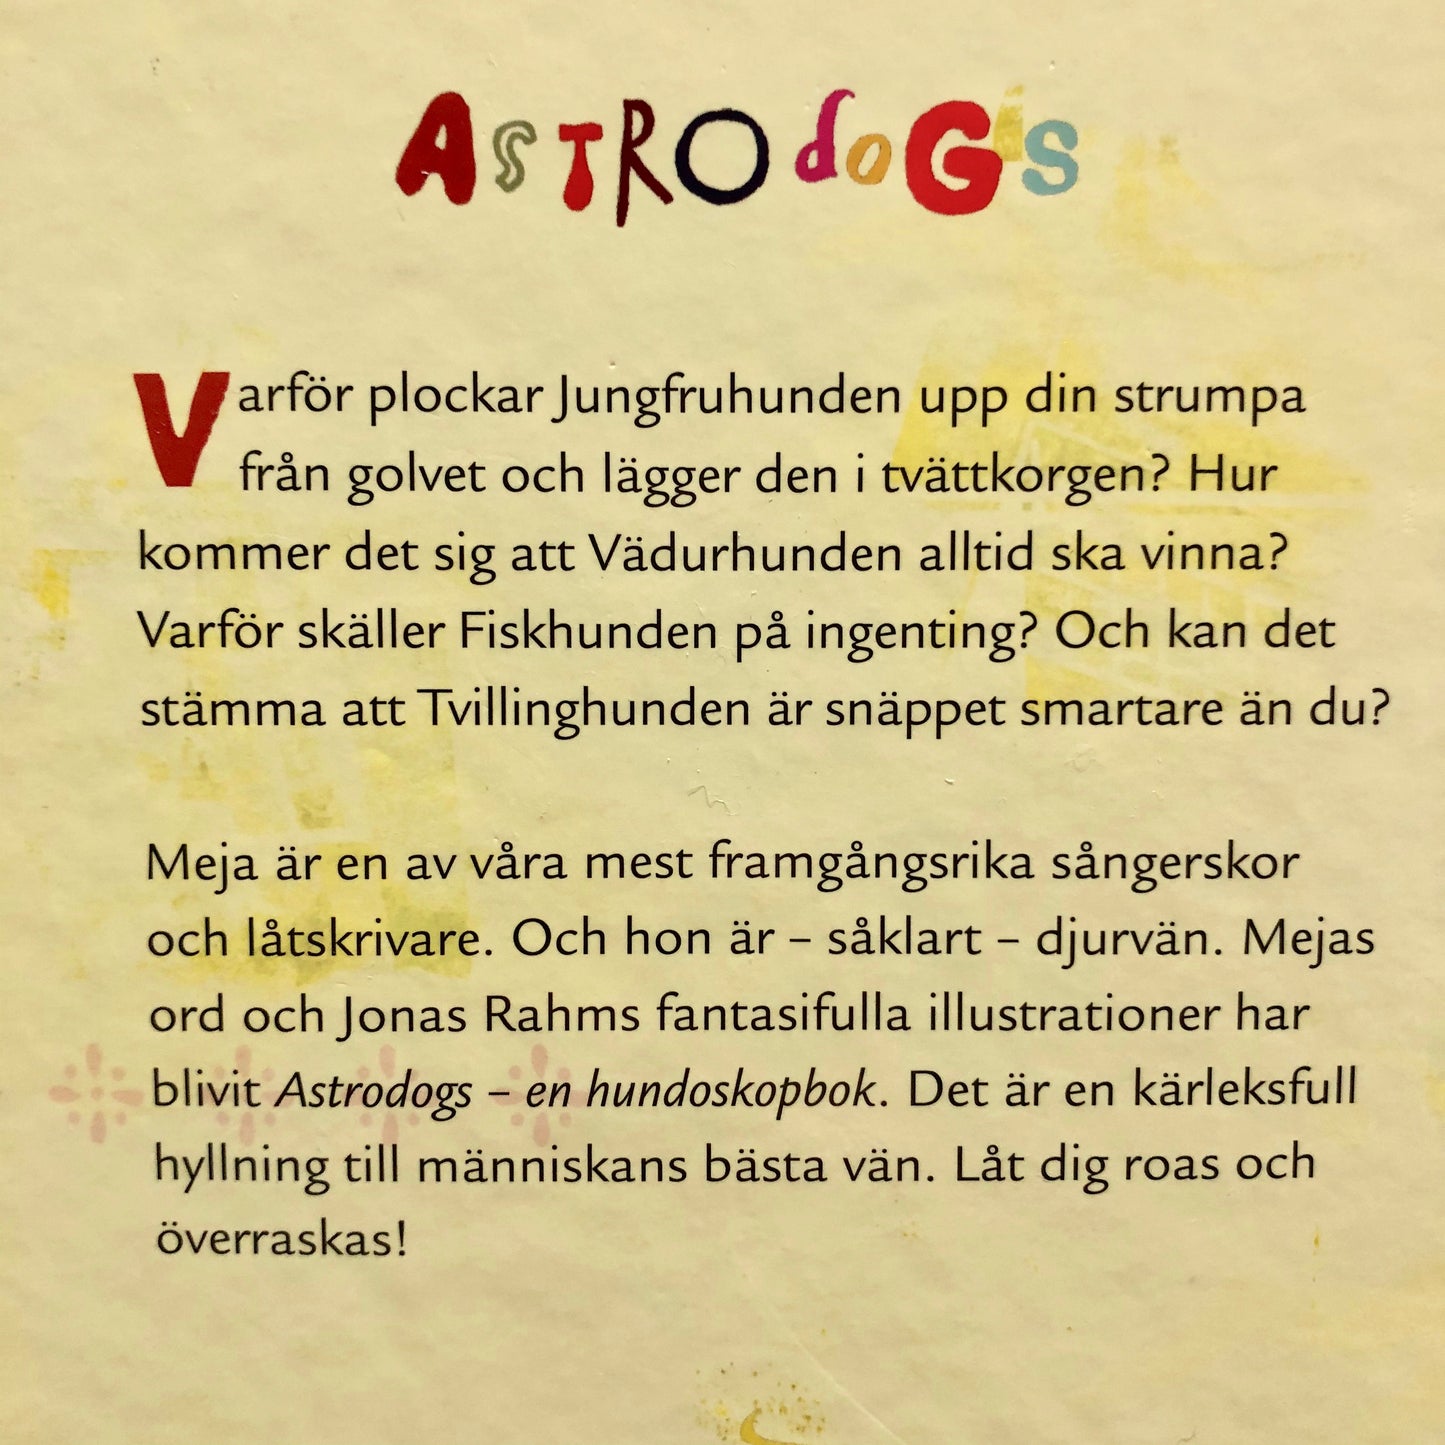 Astrodogs -  En Astrologibok för hundälskare (An astrology book for dog lovers in Swedish)